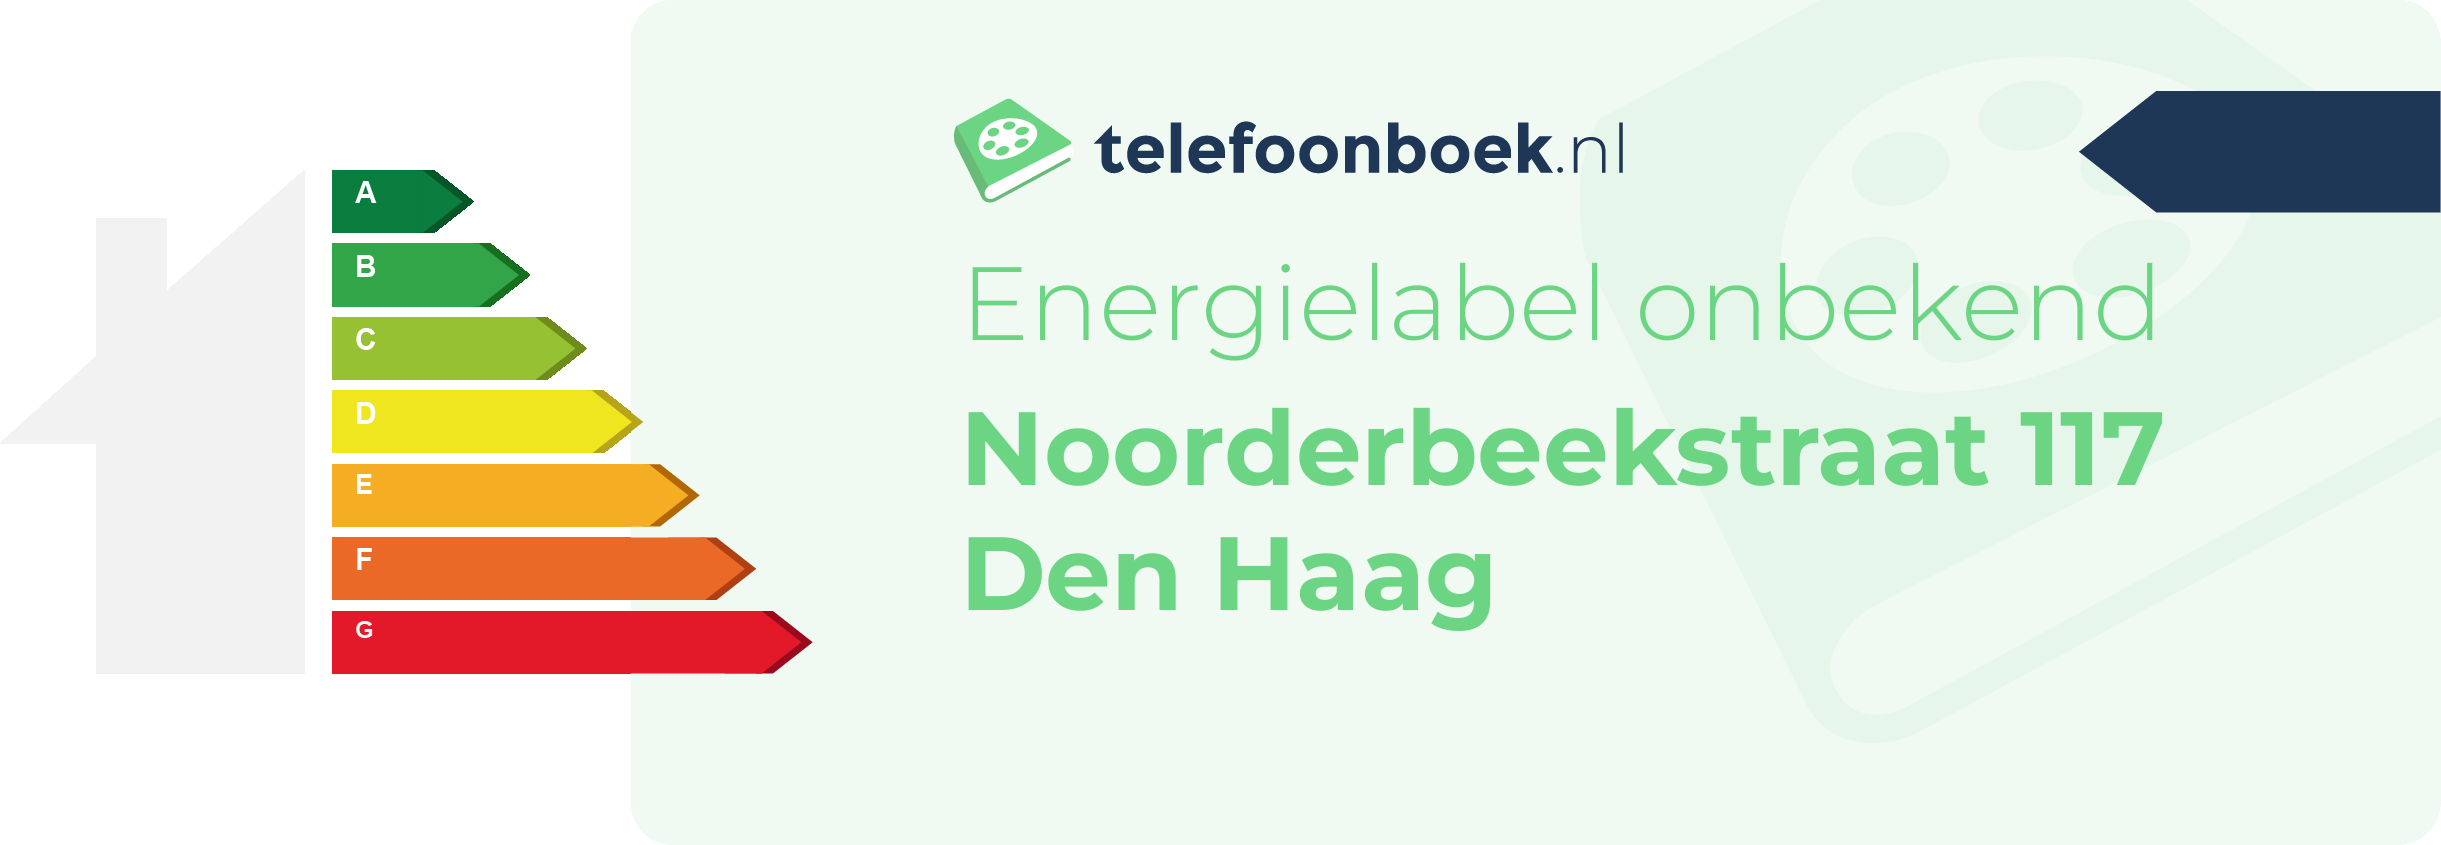 Energielabel Noorderbeekstraat 117 Den Haag